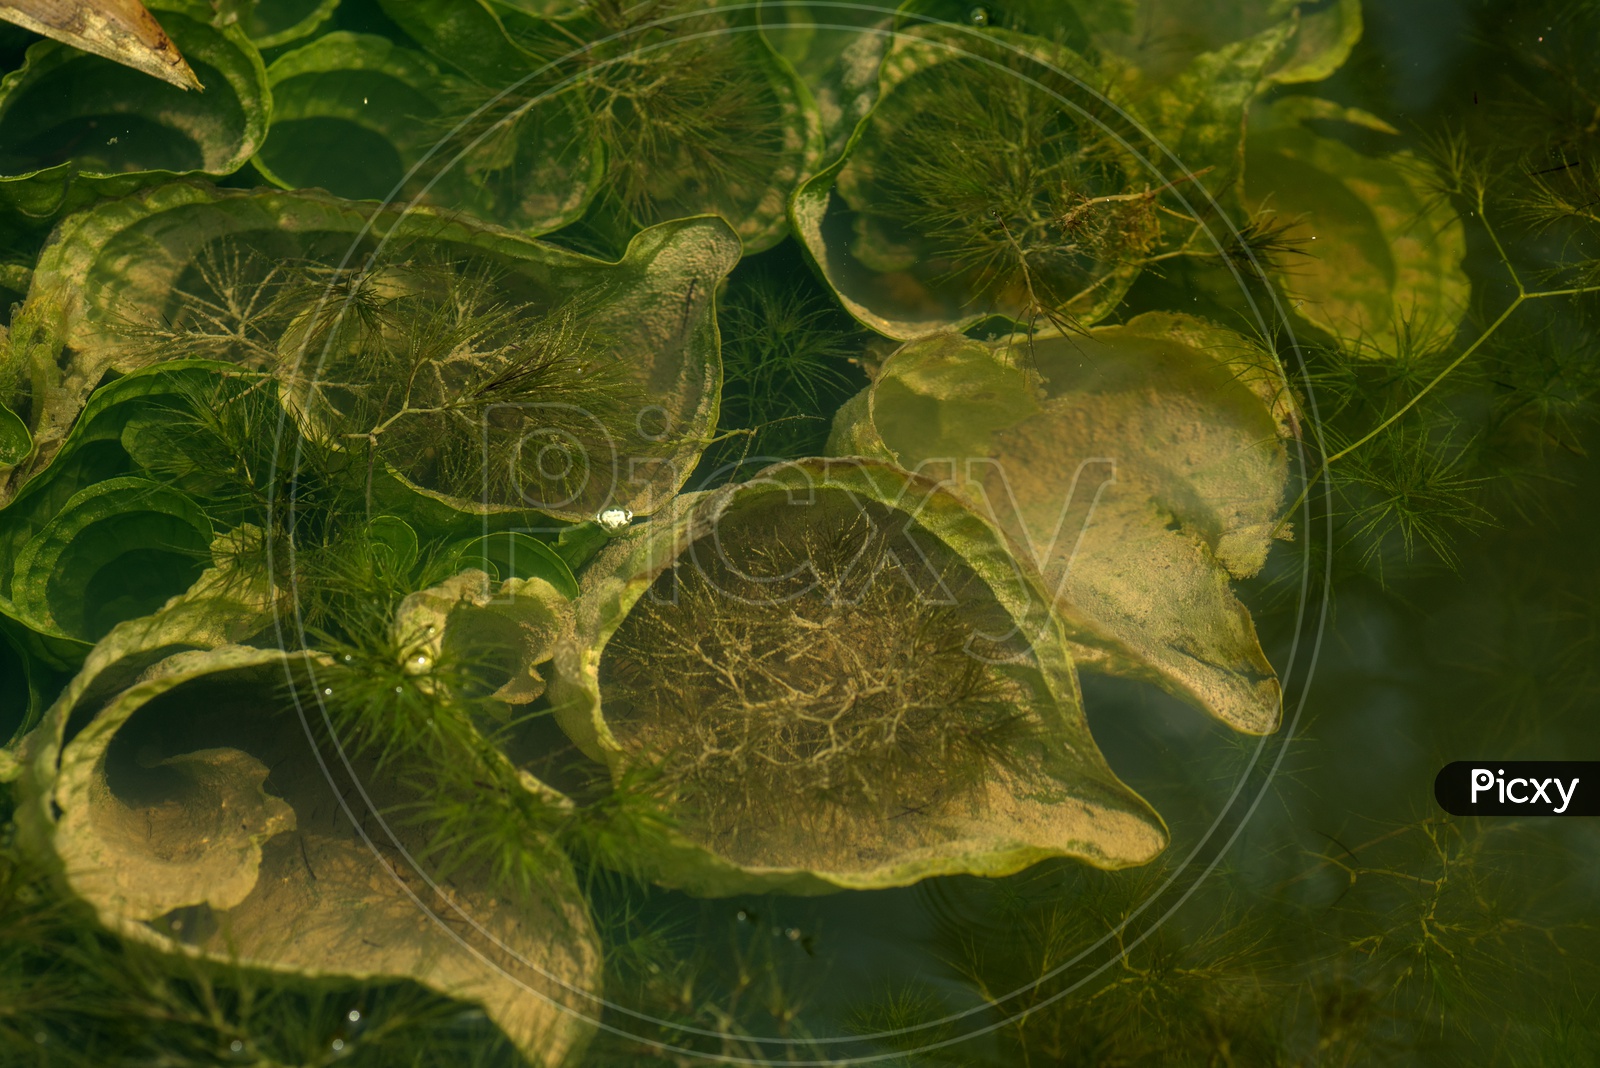 Green Aquatic  Algae Growing In a Pond